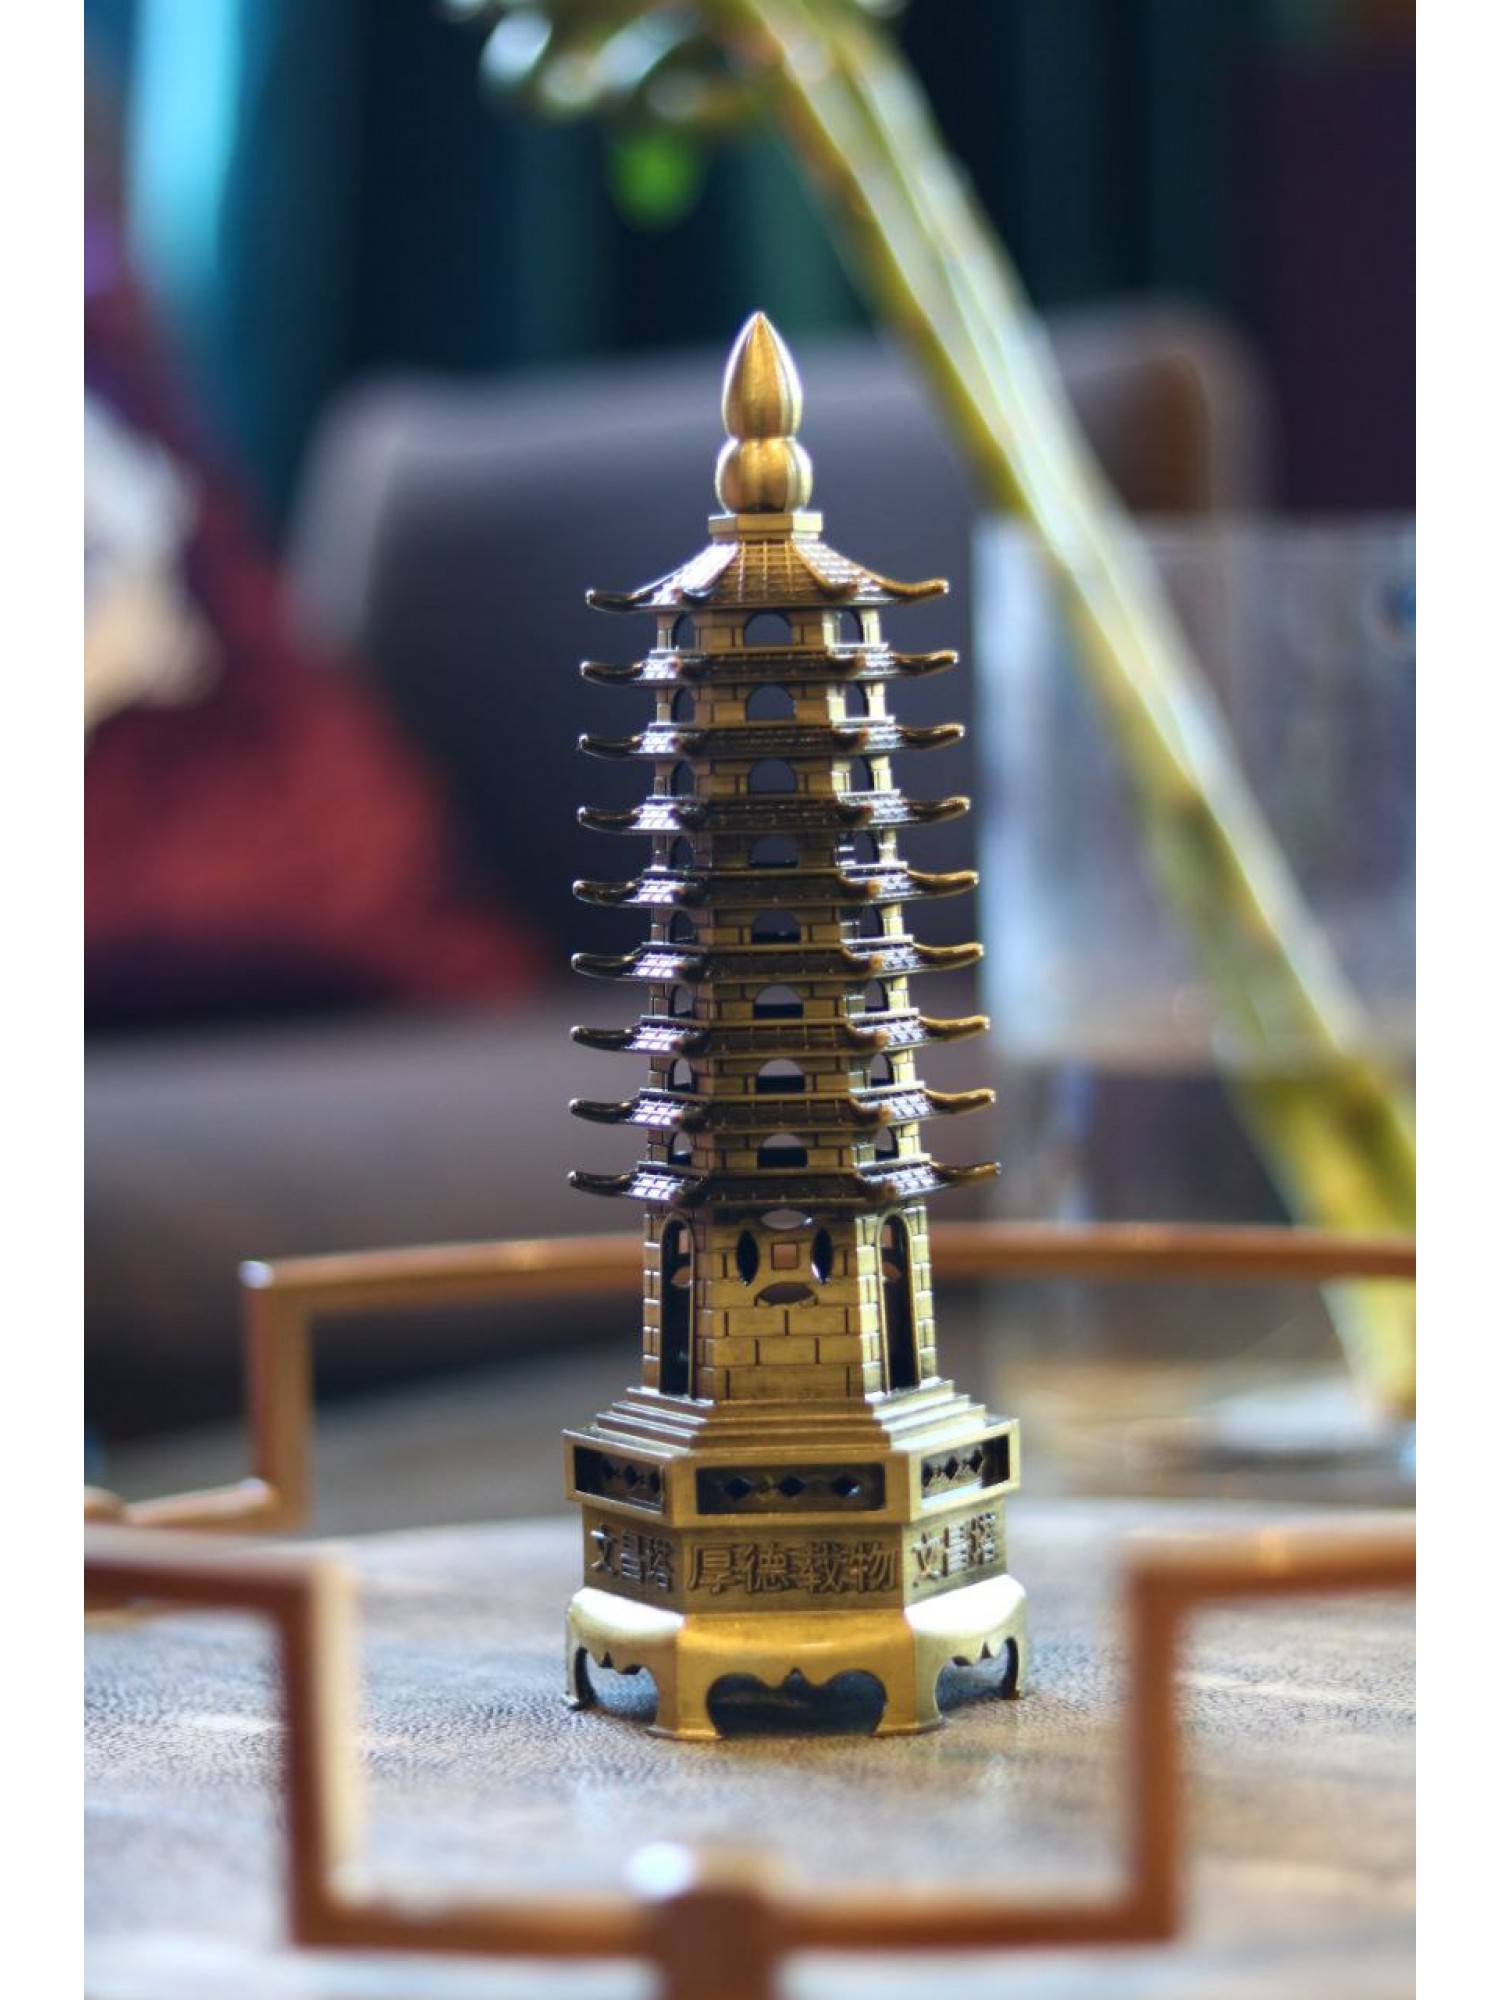 Статуэтка "Пагода 9-уровневая" помогает достичь высокого академического статуса и успеха в учебе